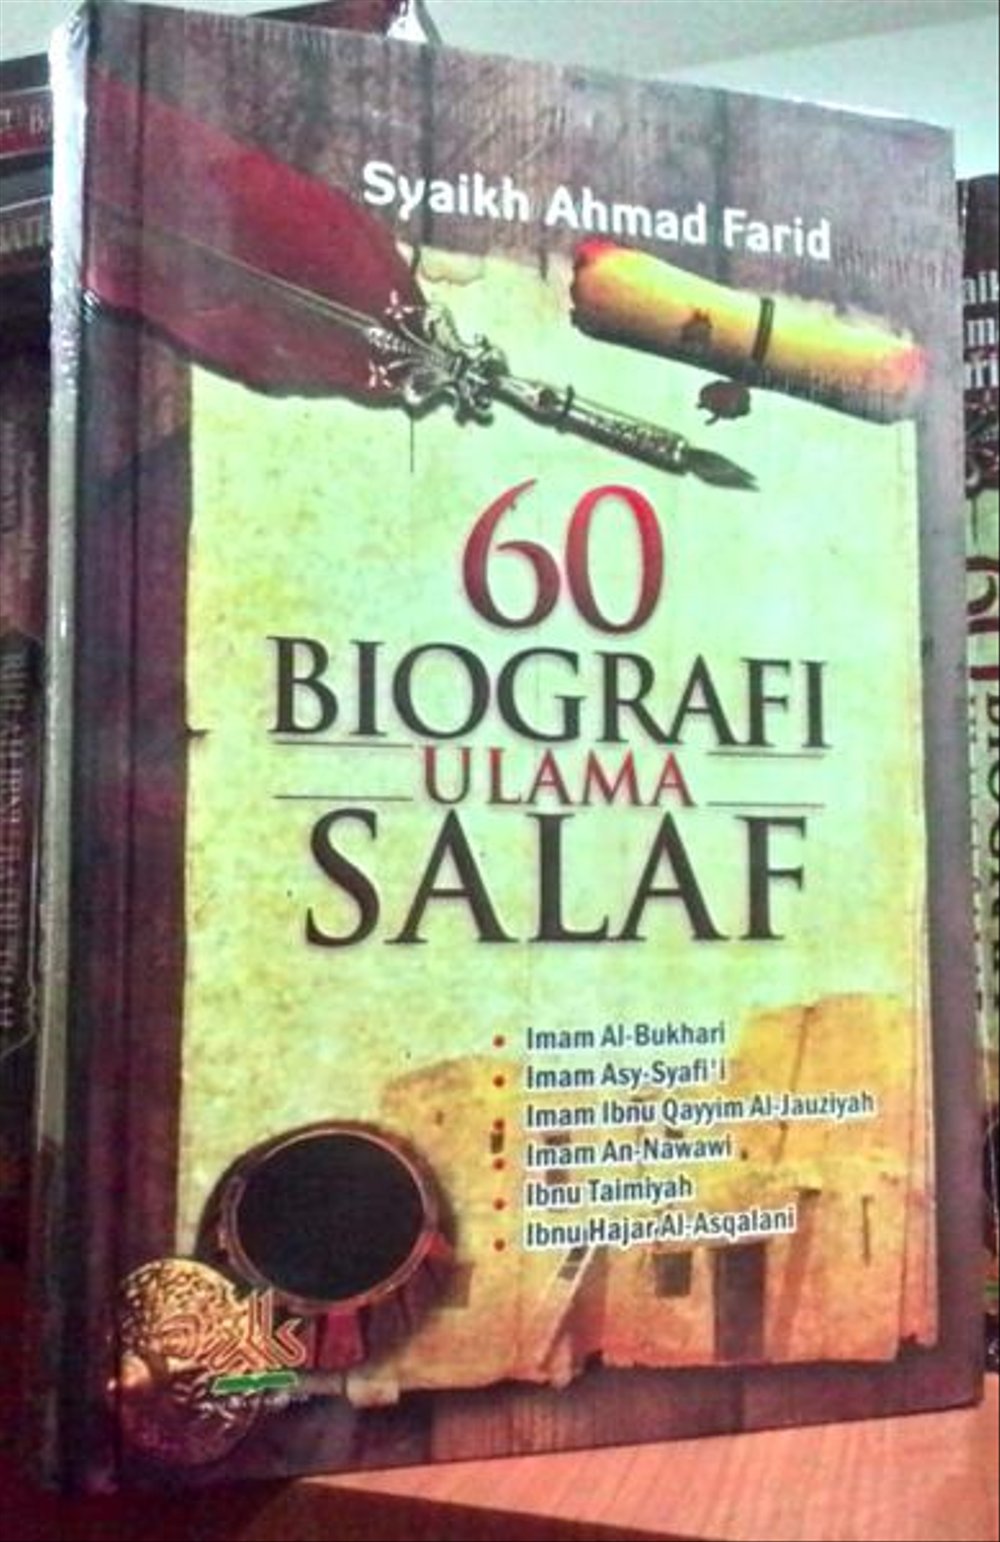 60 biografi ulama salaf pdf free download